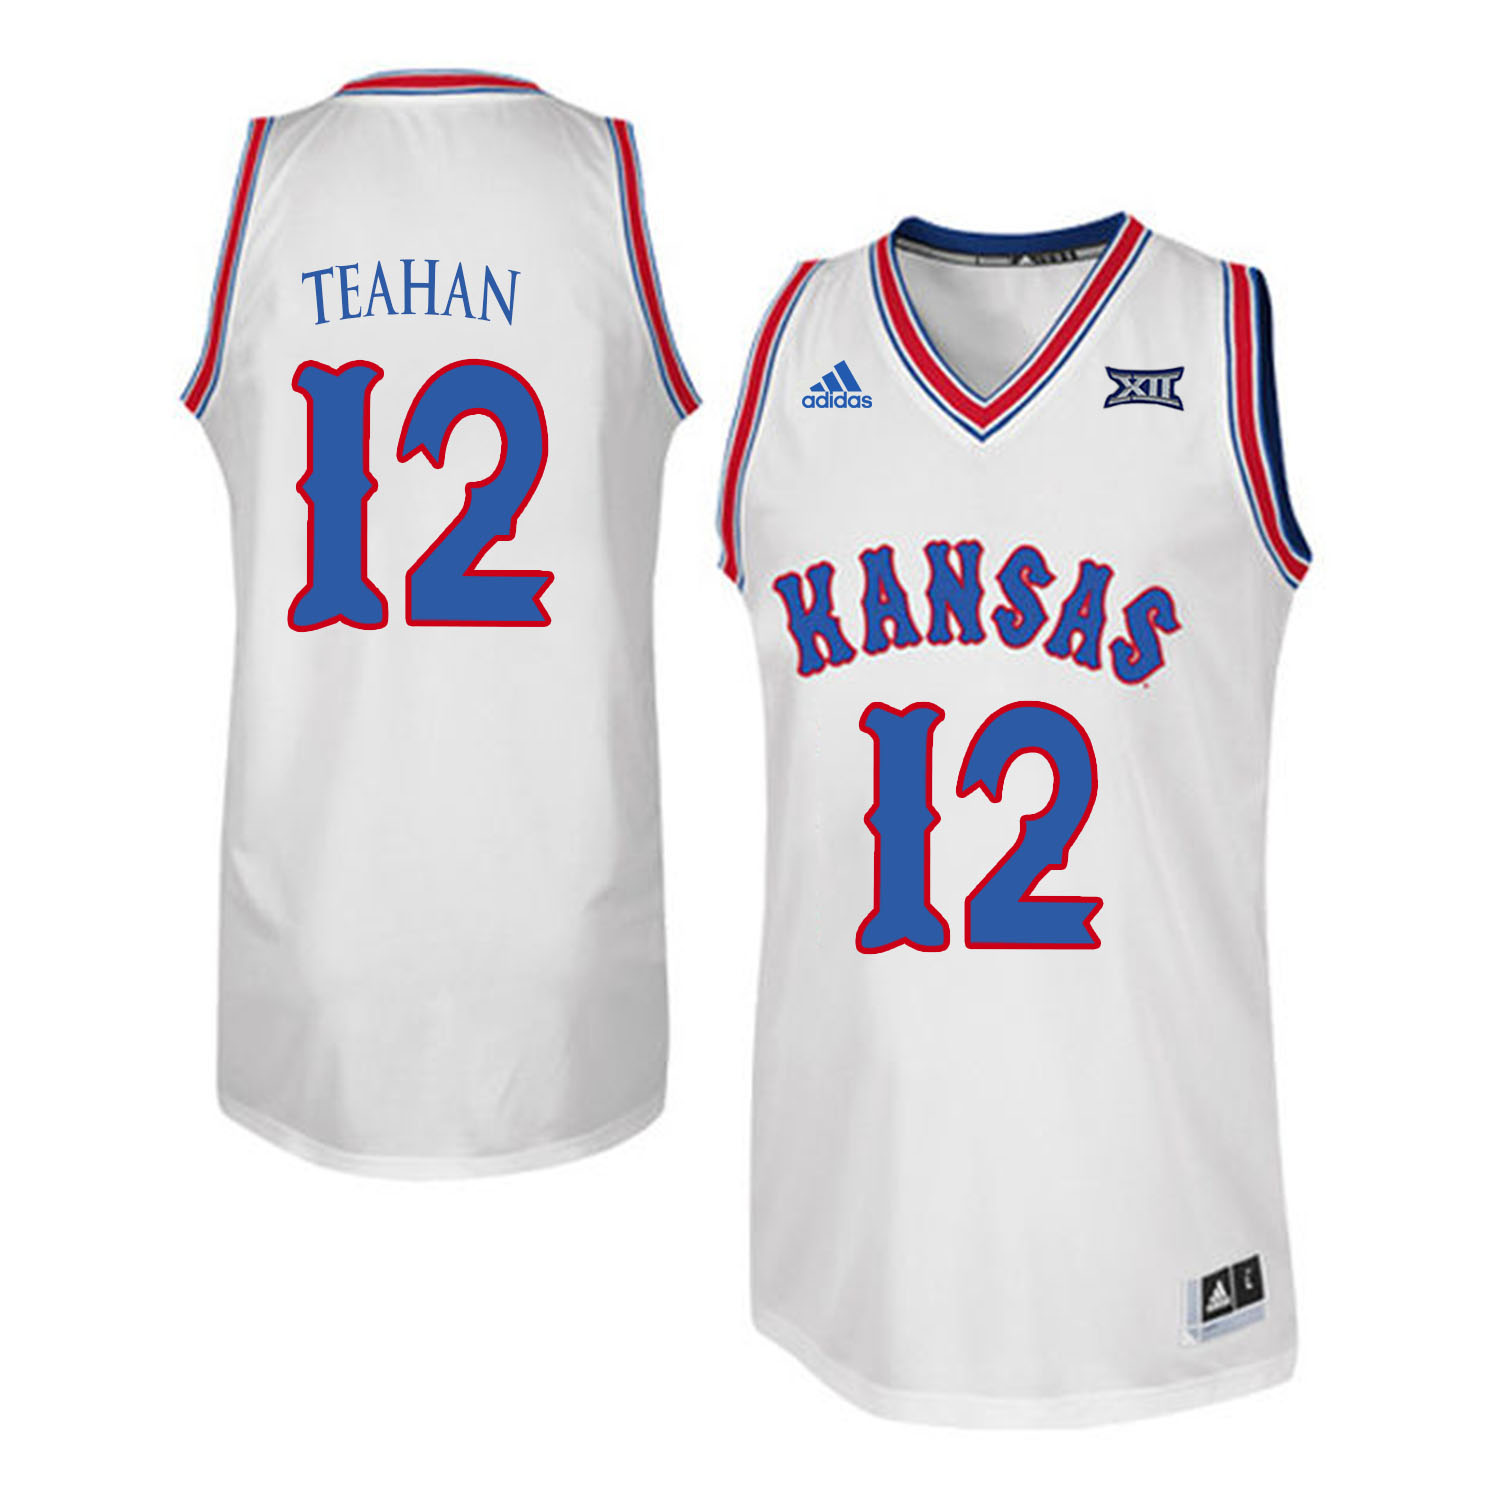 Kansas Jayhawks 12 Chris Teahan White Throwback College Basketball Jersey